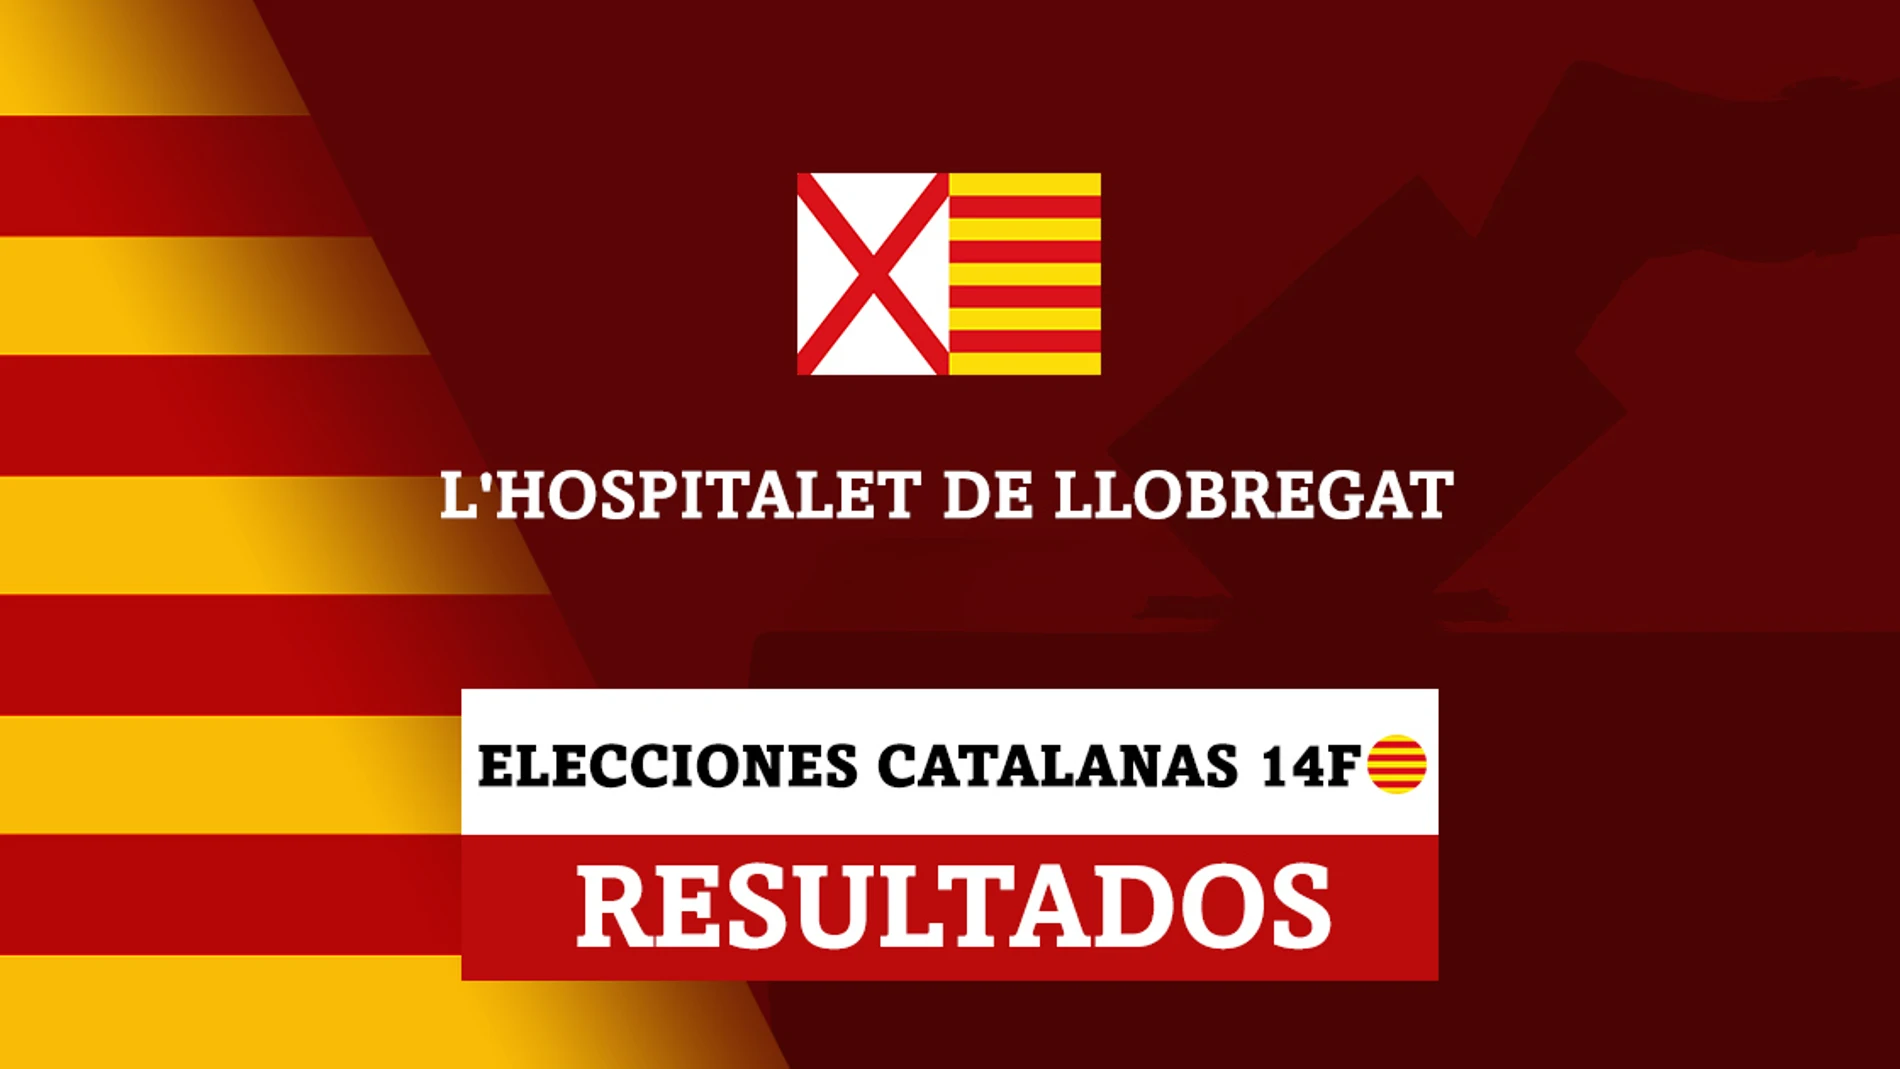 Resultados de las elecciones catalanas en L’Hospitalet de Llobregat (Hospitalet de Llobregat)